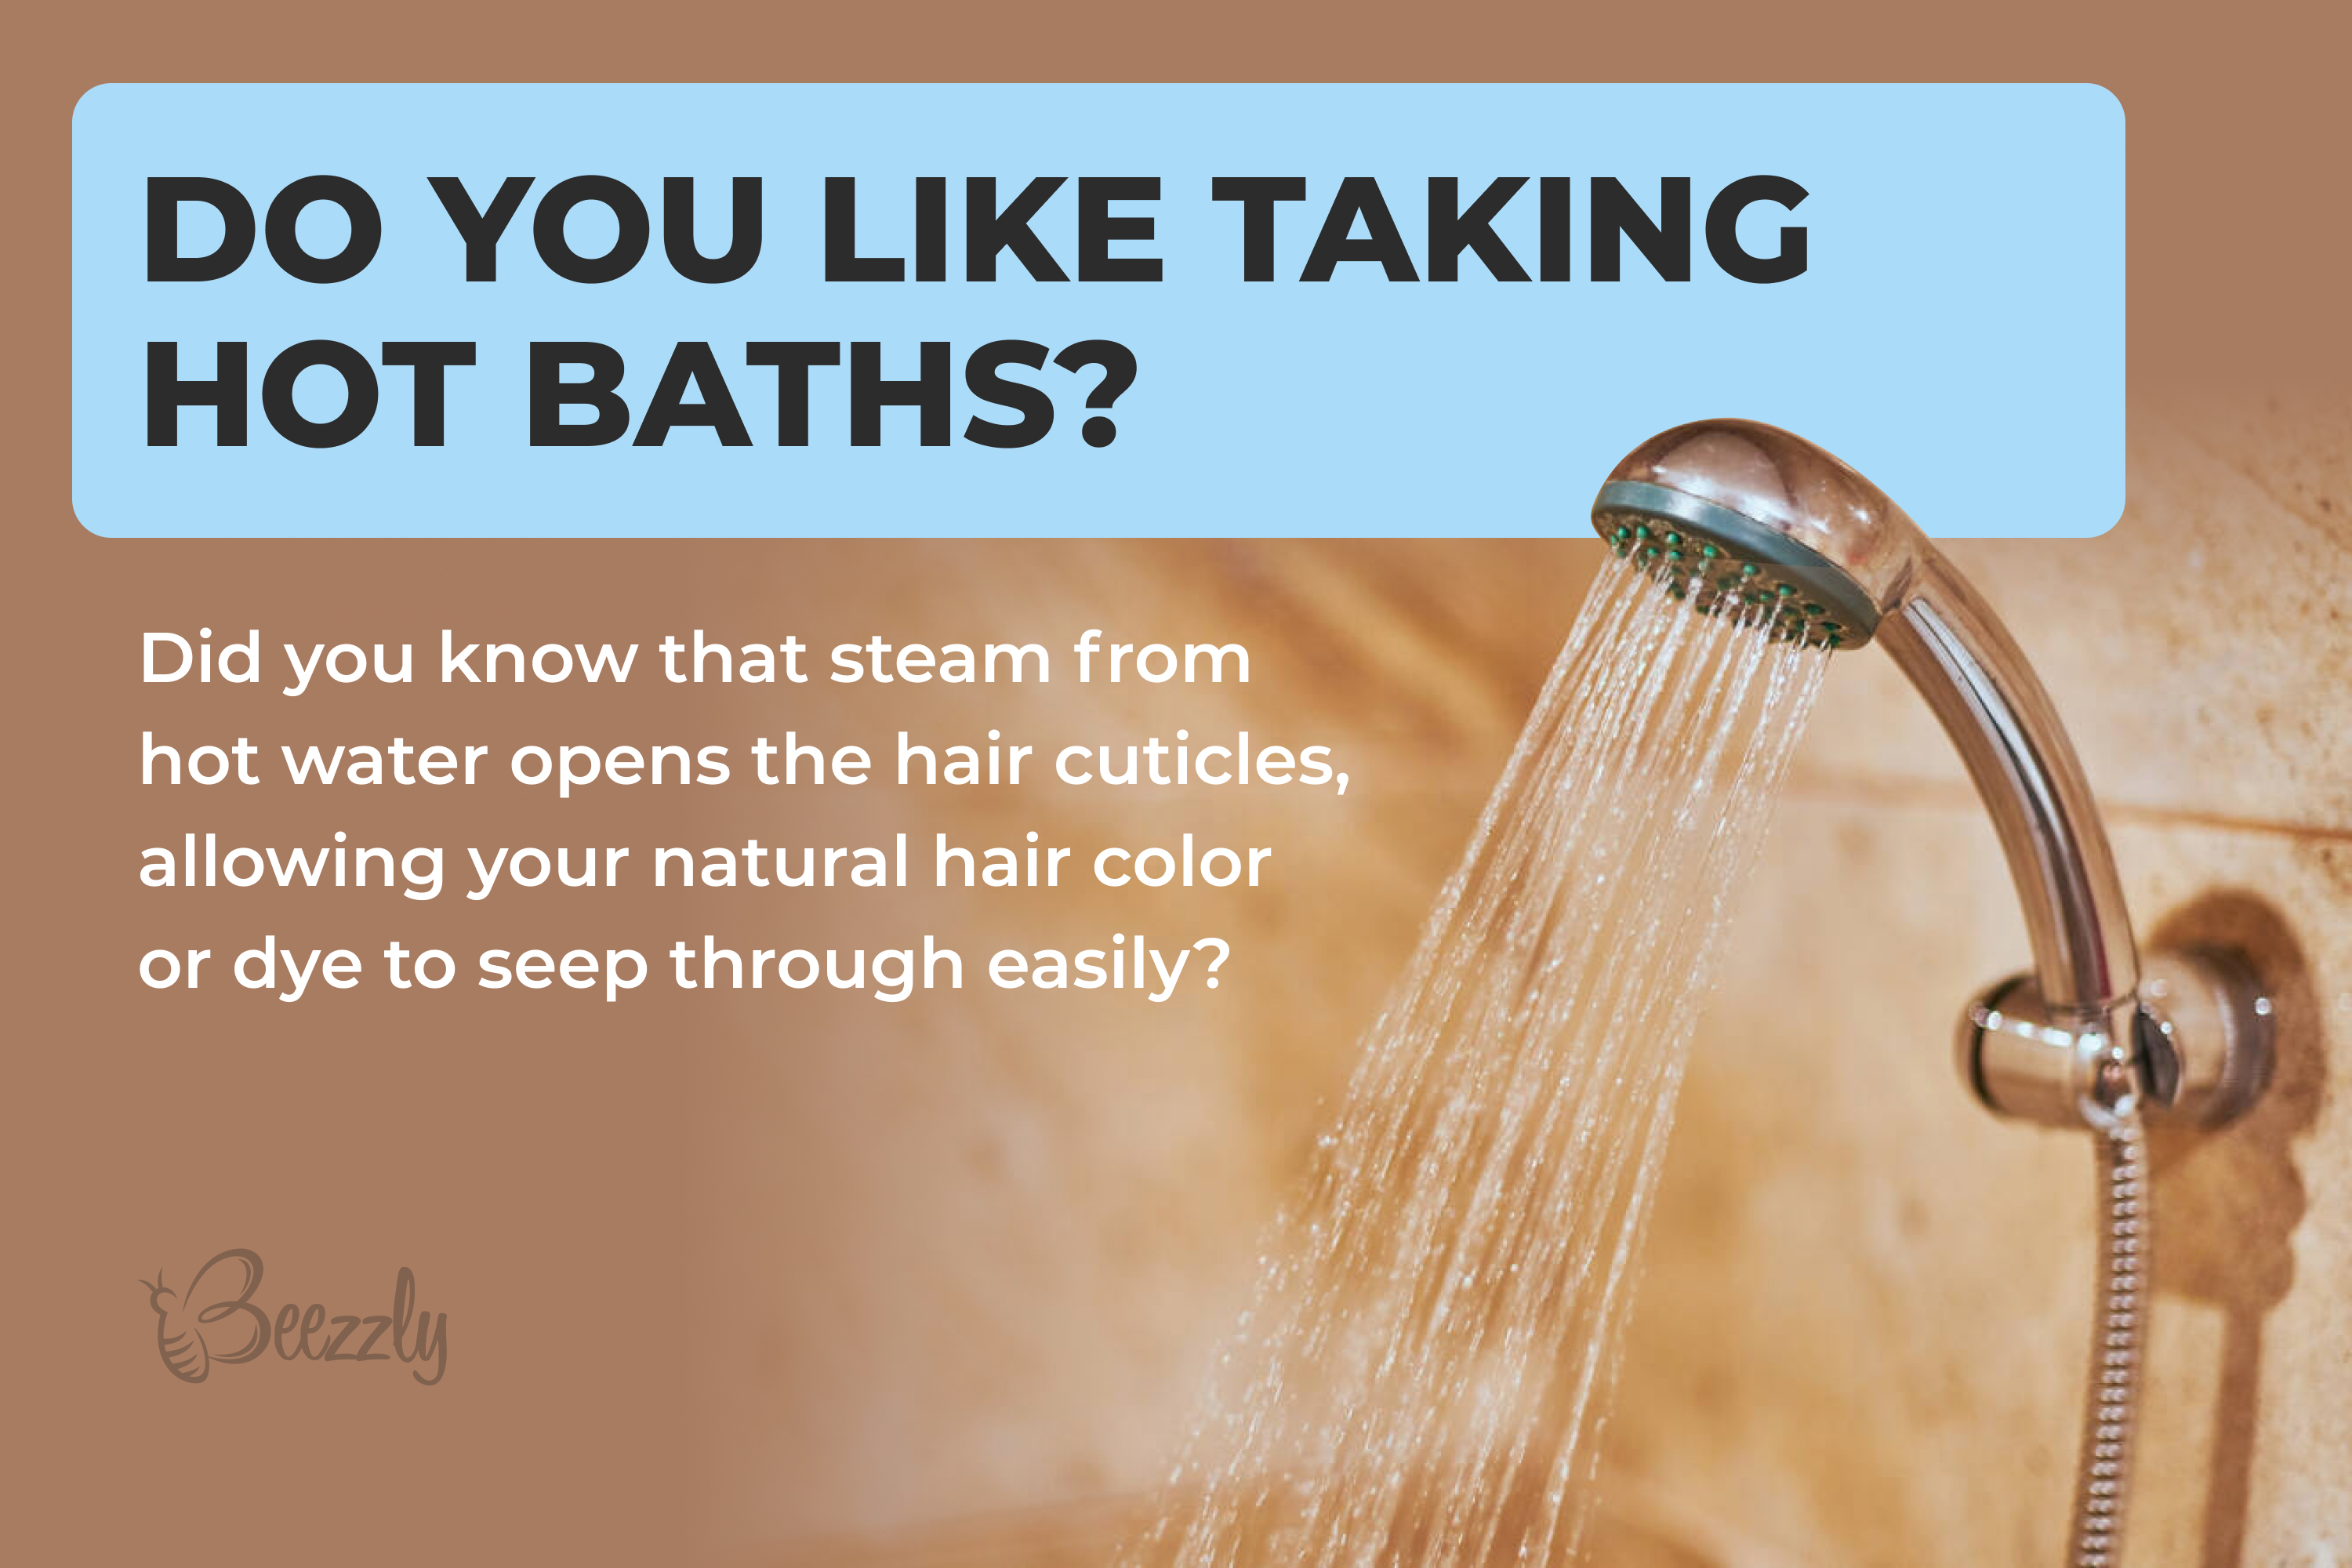 Do you like taking hot baths